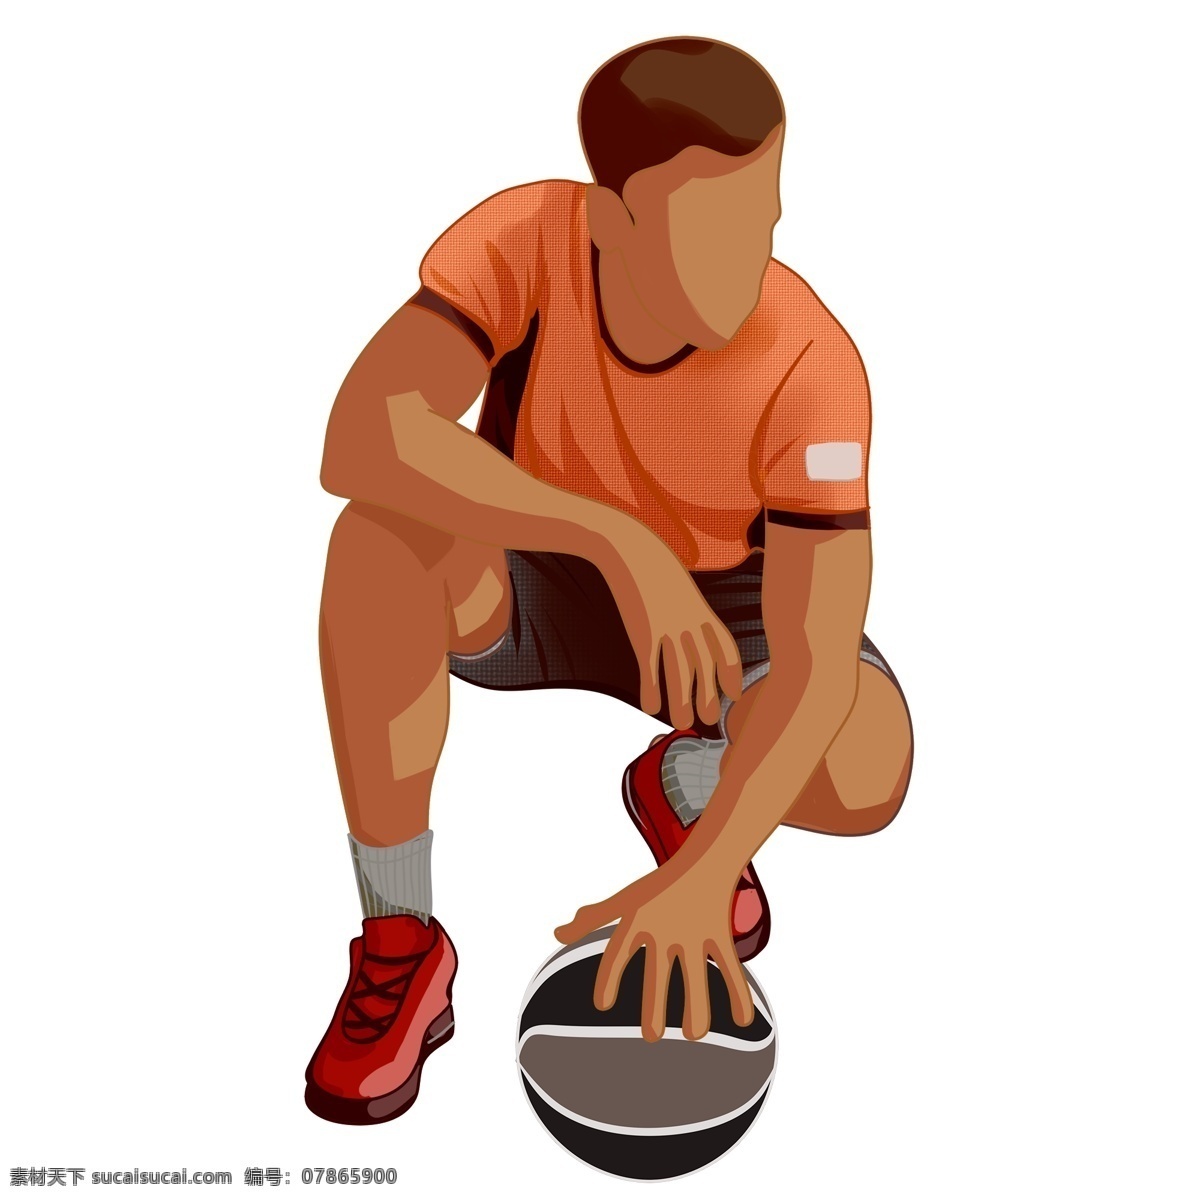 手绘 篮球 运动员 人物 卡通 简约 插画 男人 打篮球